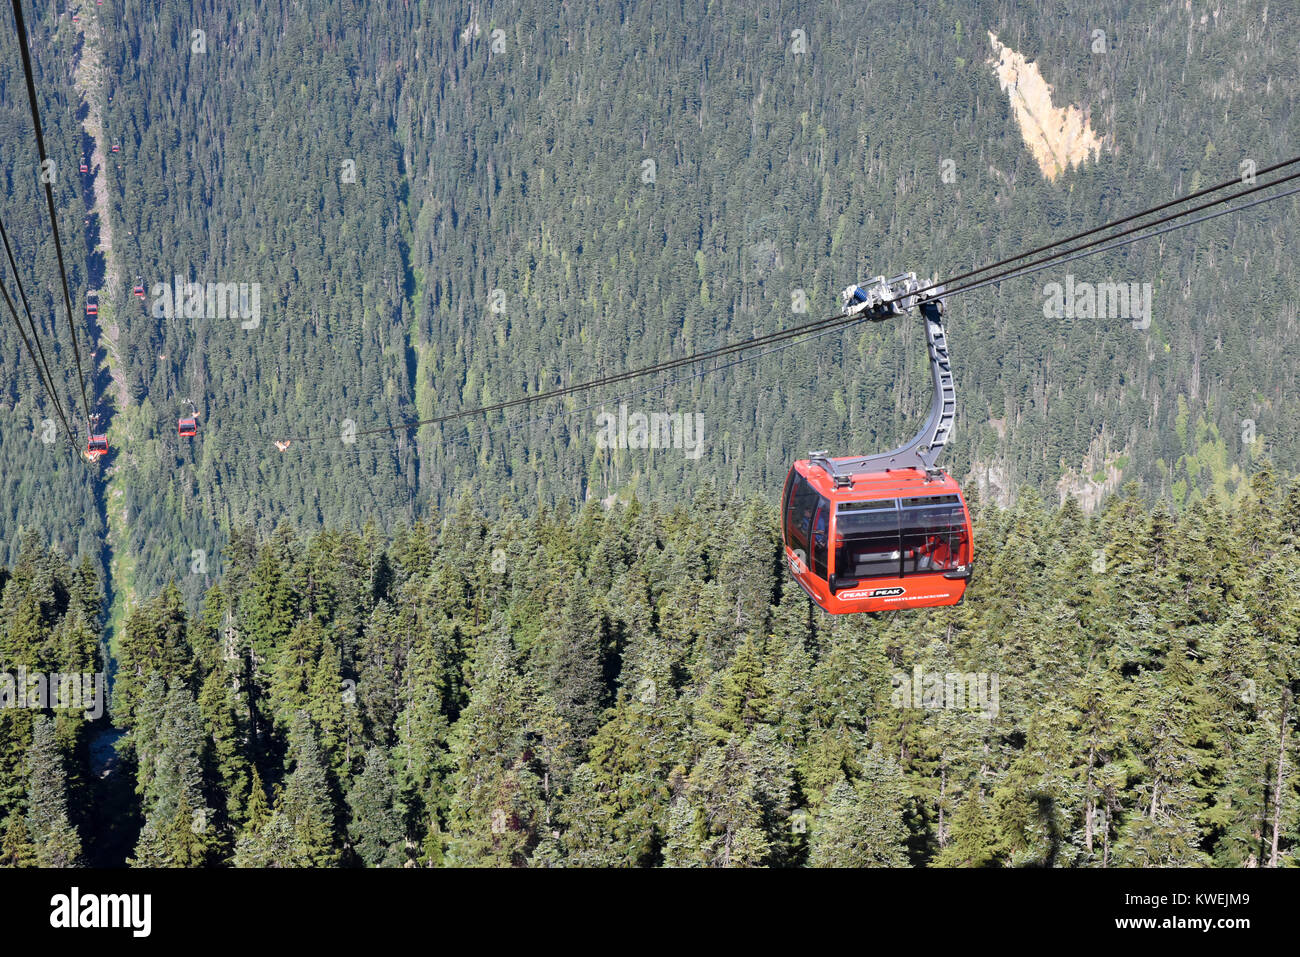 L'été sur les montagnes de Whistler Blackcomb en Colombie-Britannique & nuages brouillard enveloppent les sapins et pins / téléphériques gondole - station de ski olympique Banque D'Images